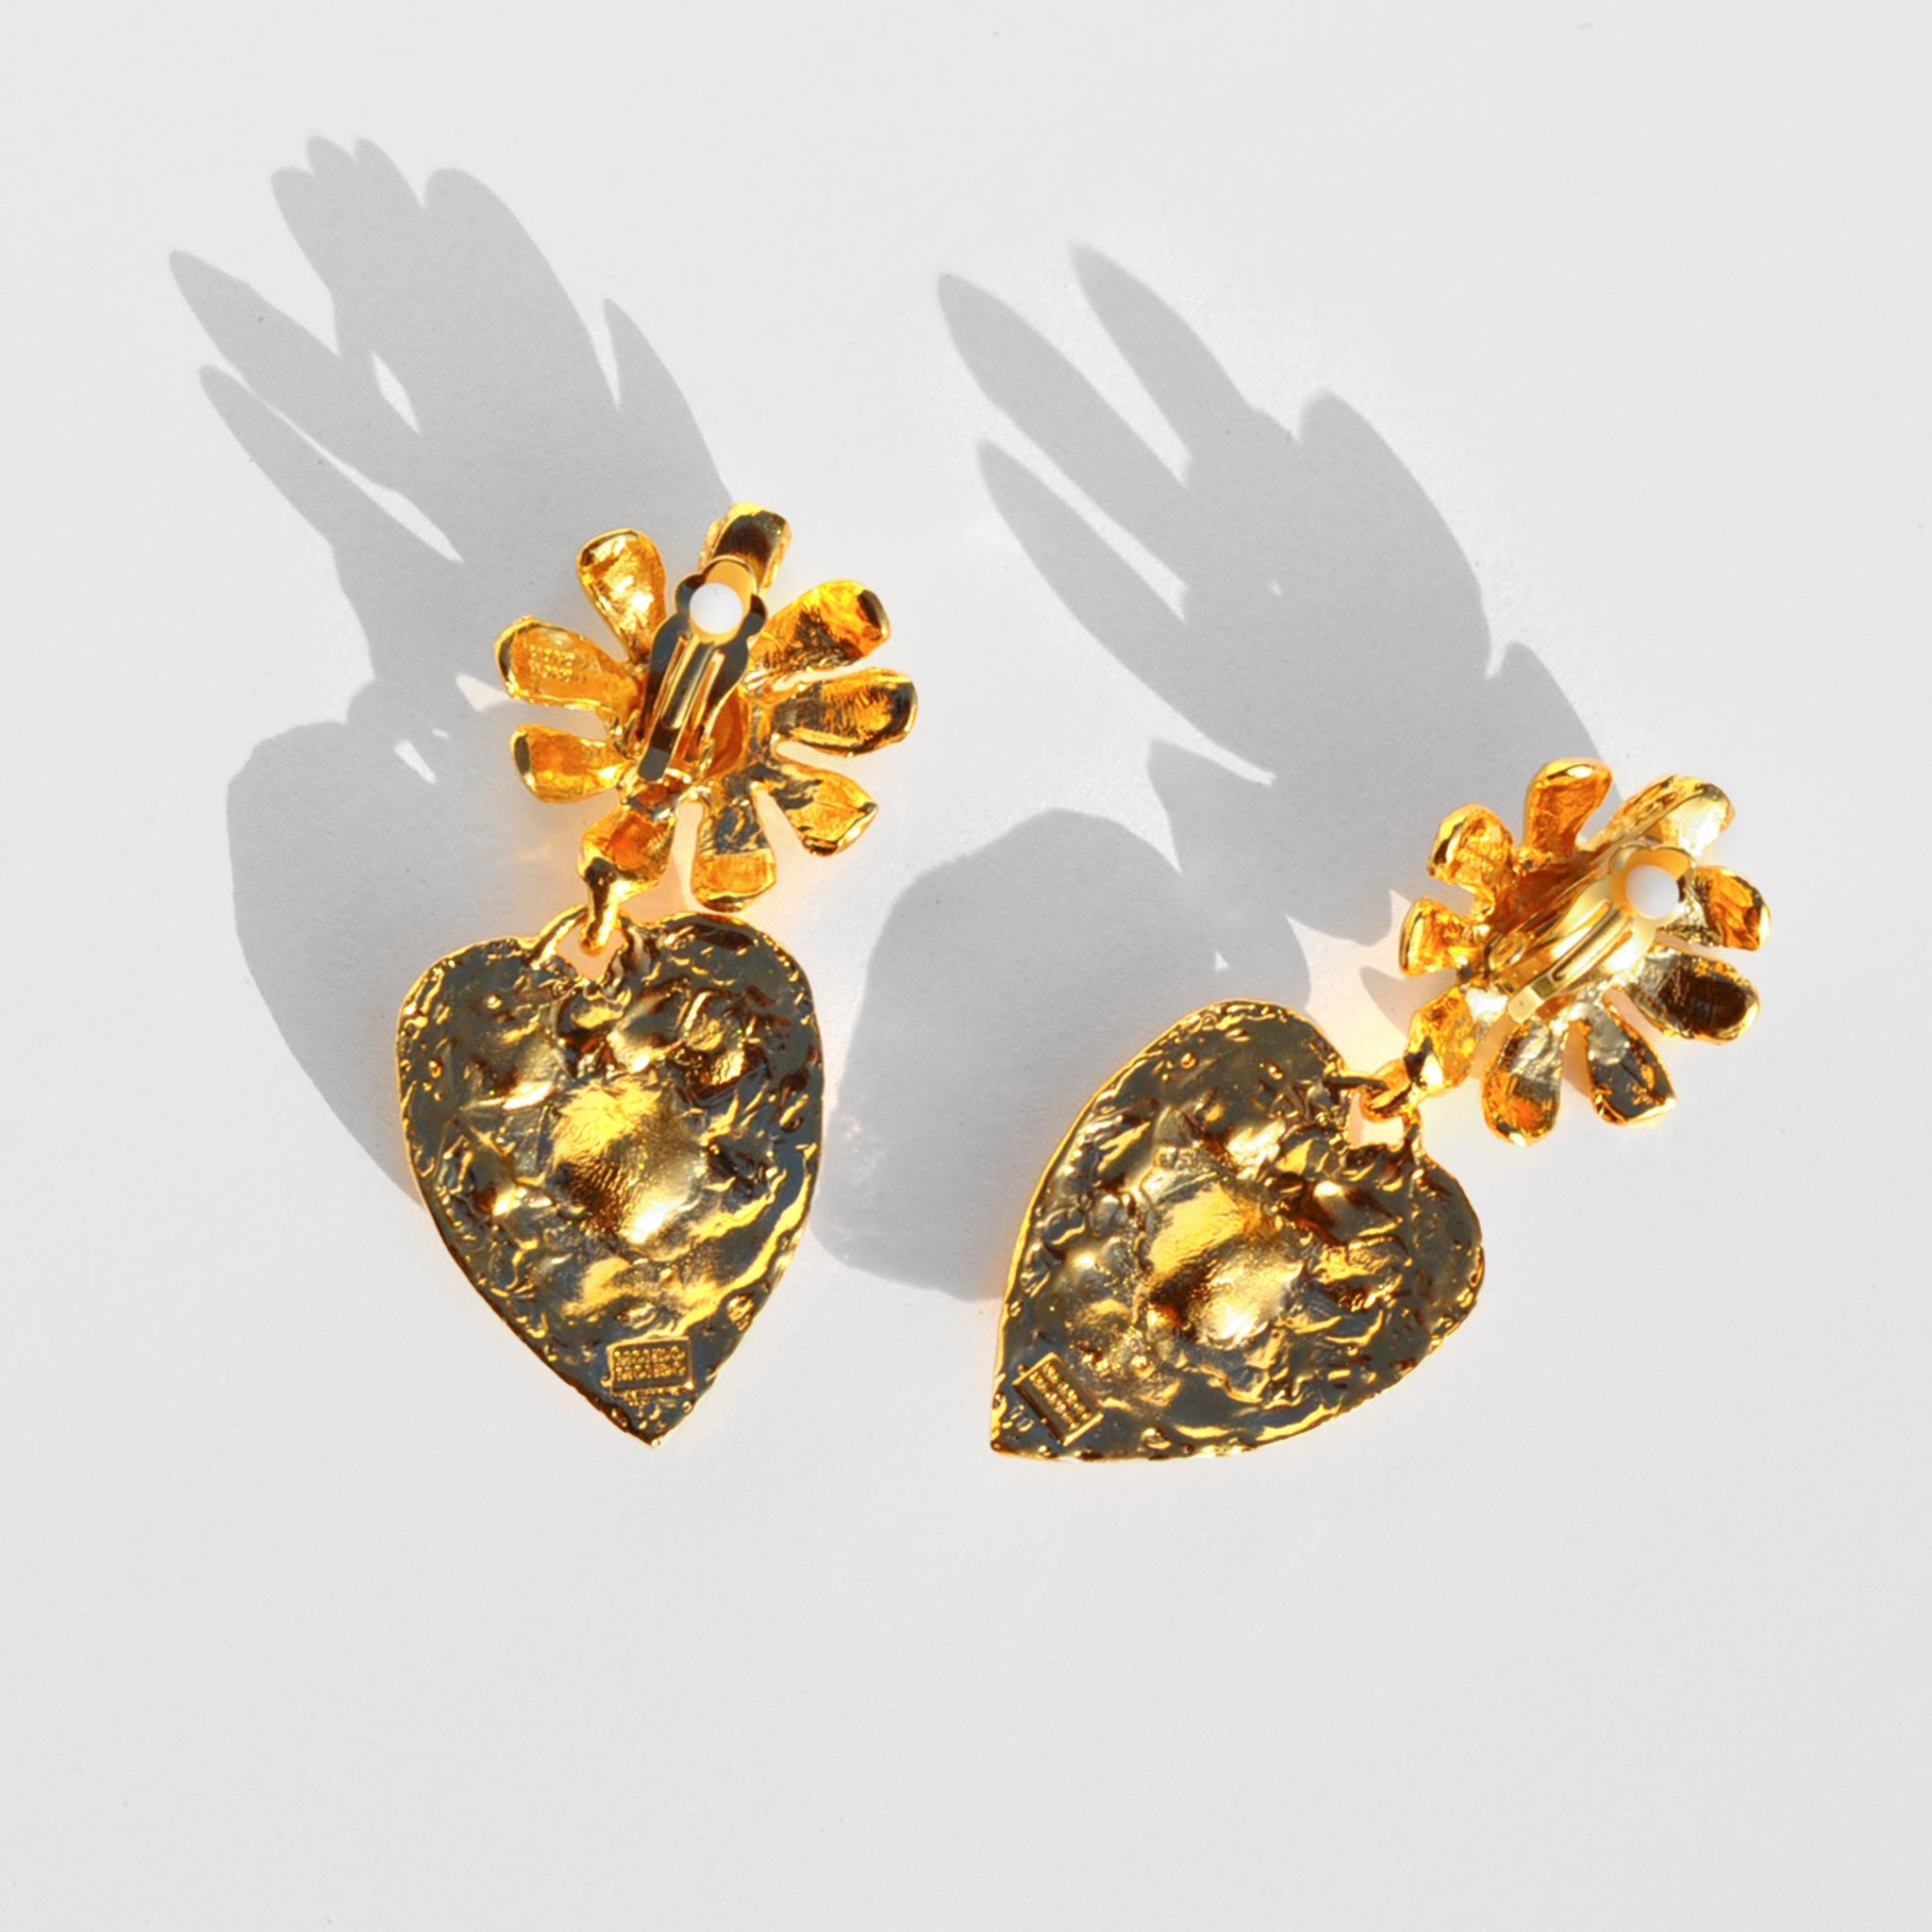 Back image of the tropicana earrings by Mondo Mondo.